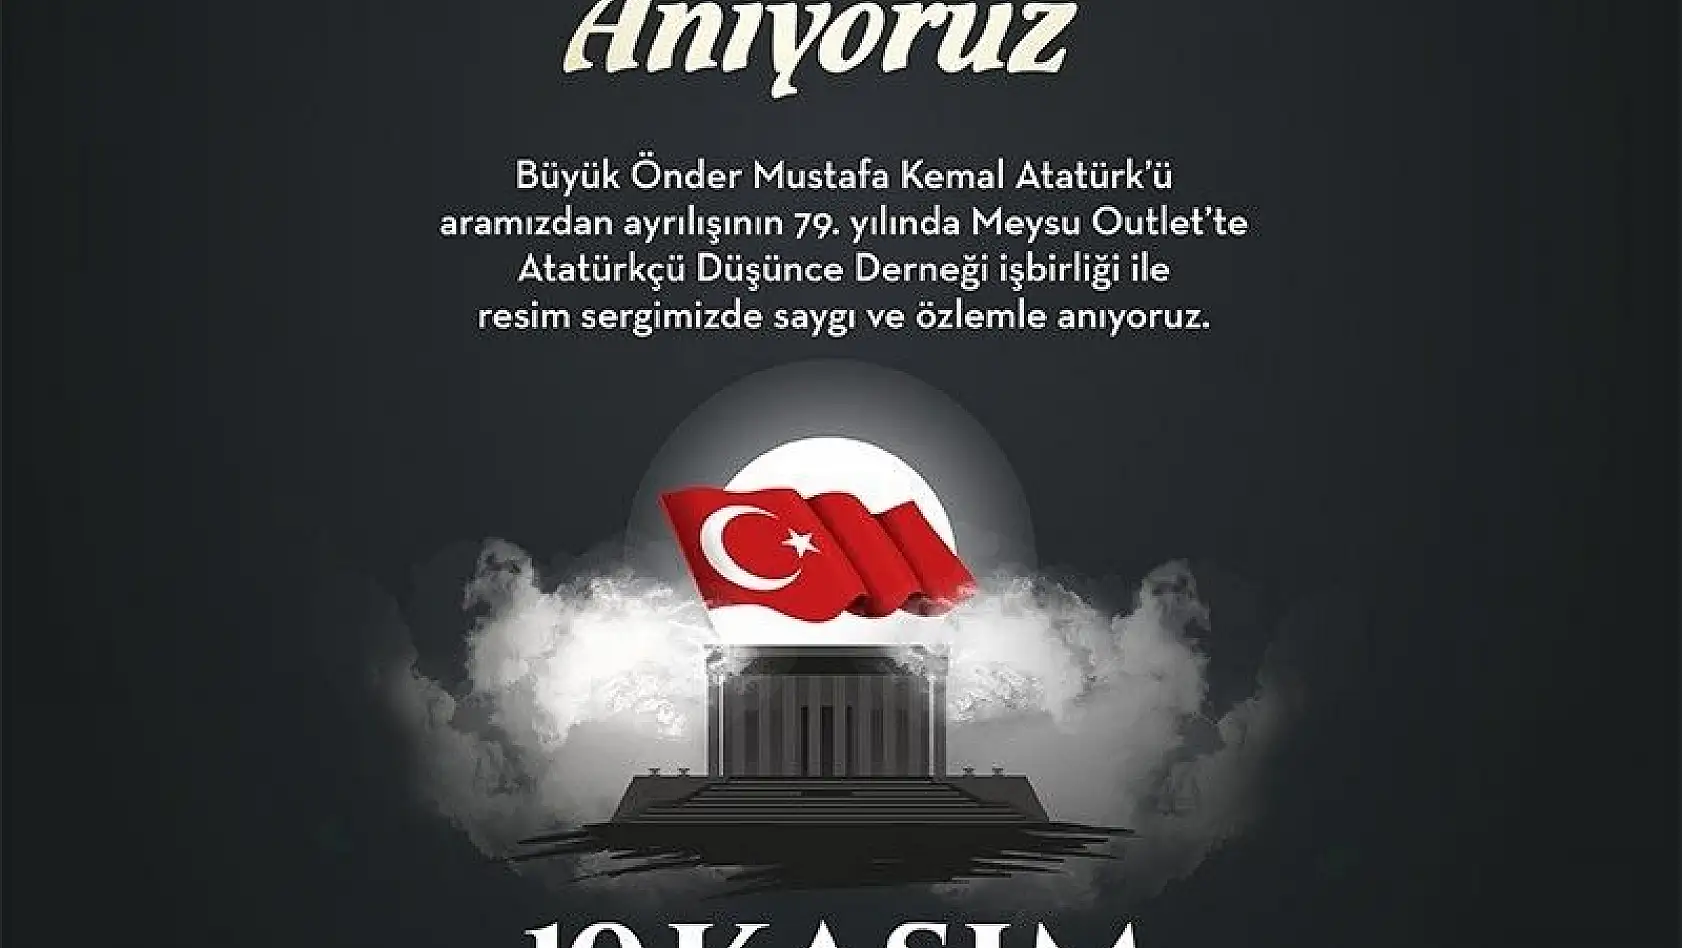 10 Kasım'a Özel Atatürk fotoğrafları sergisi